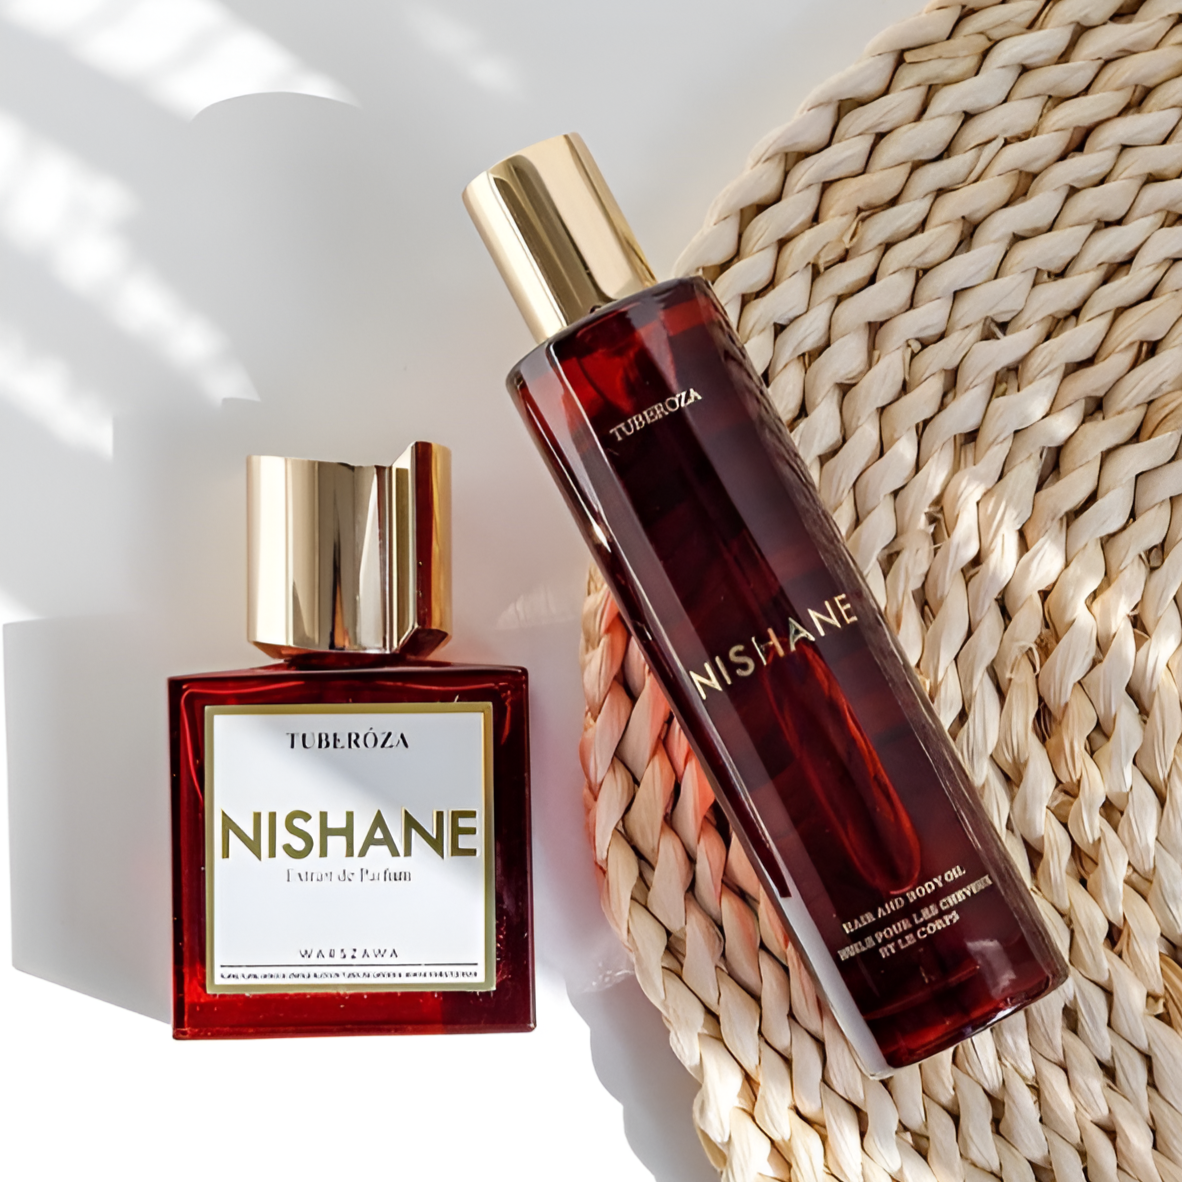 Nishane Tuberoza Hair & Body Oil